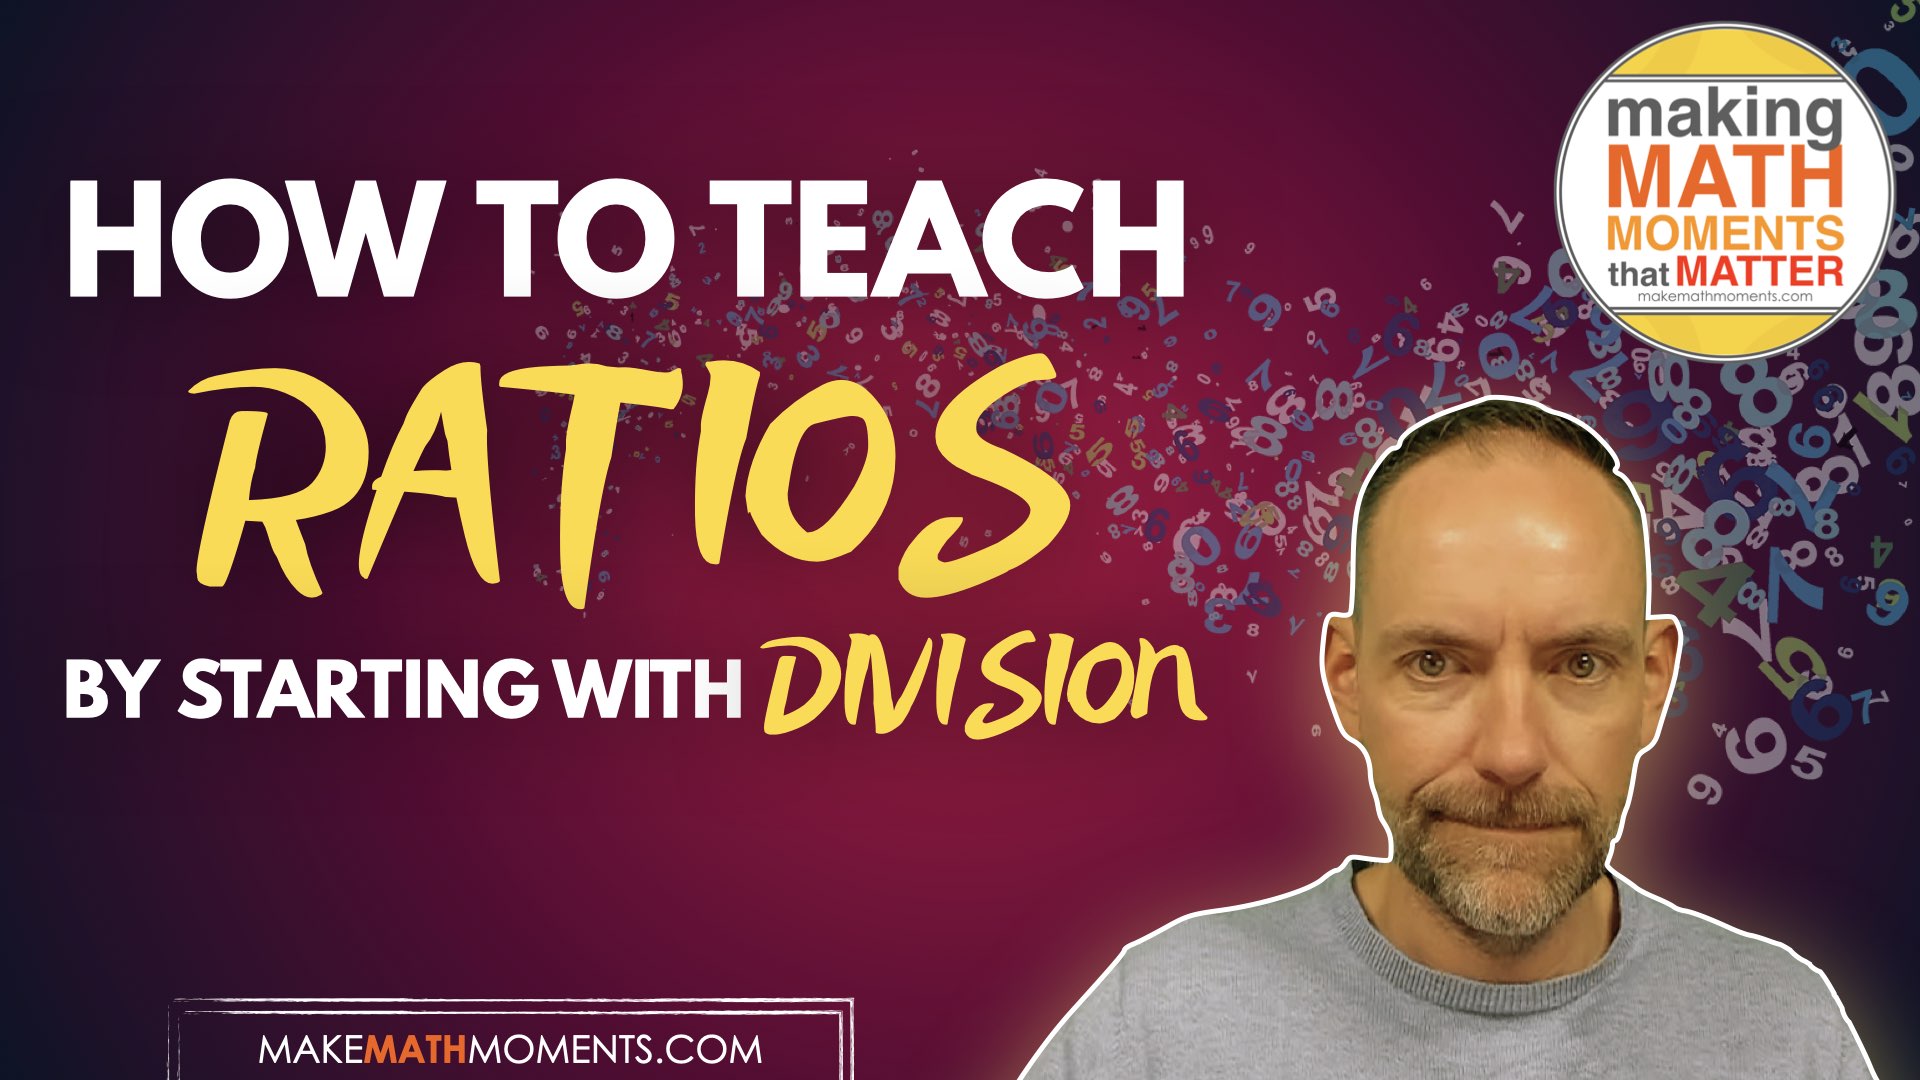 How To Teach Ratios Through Division